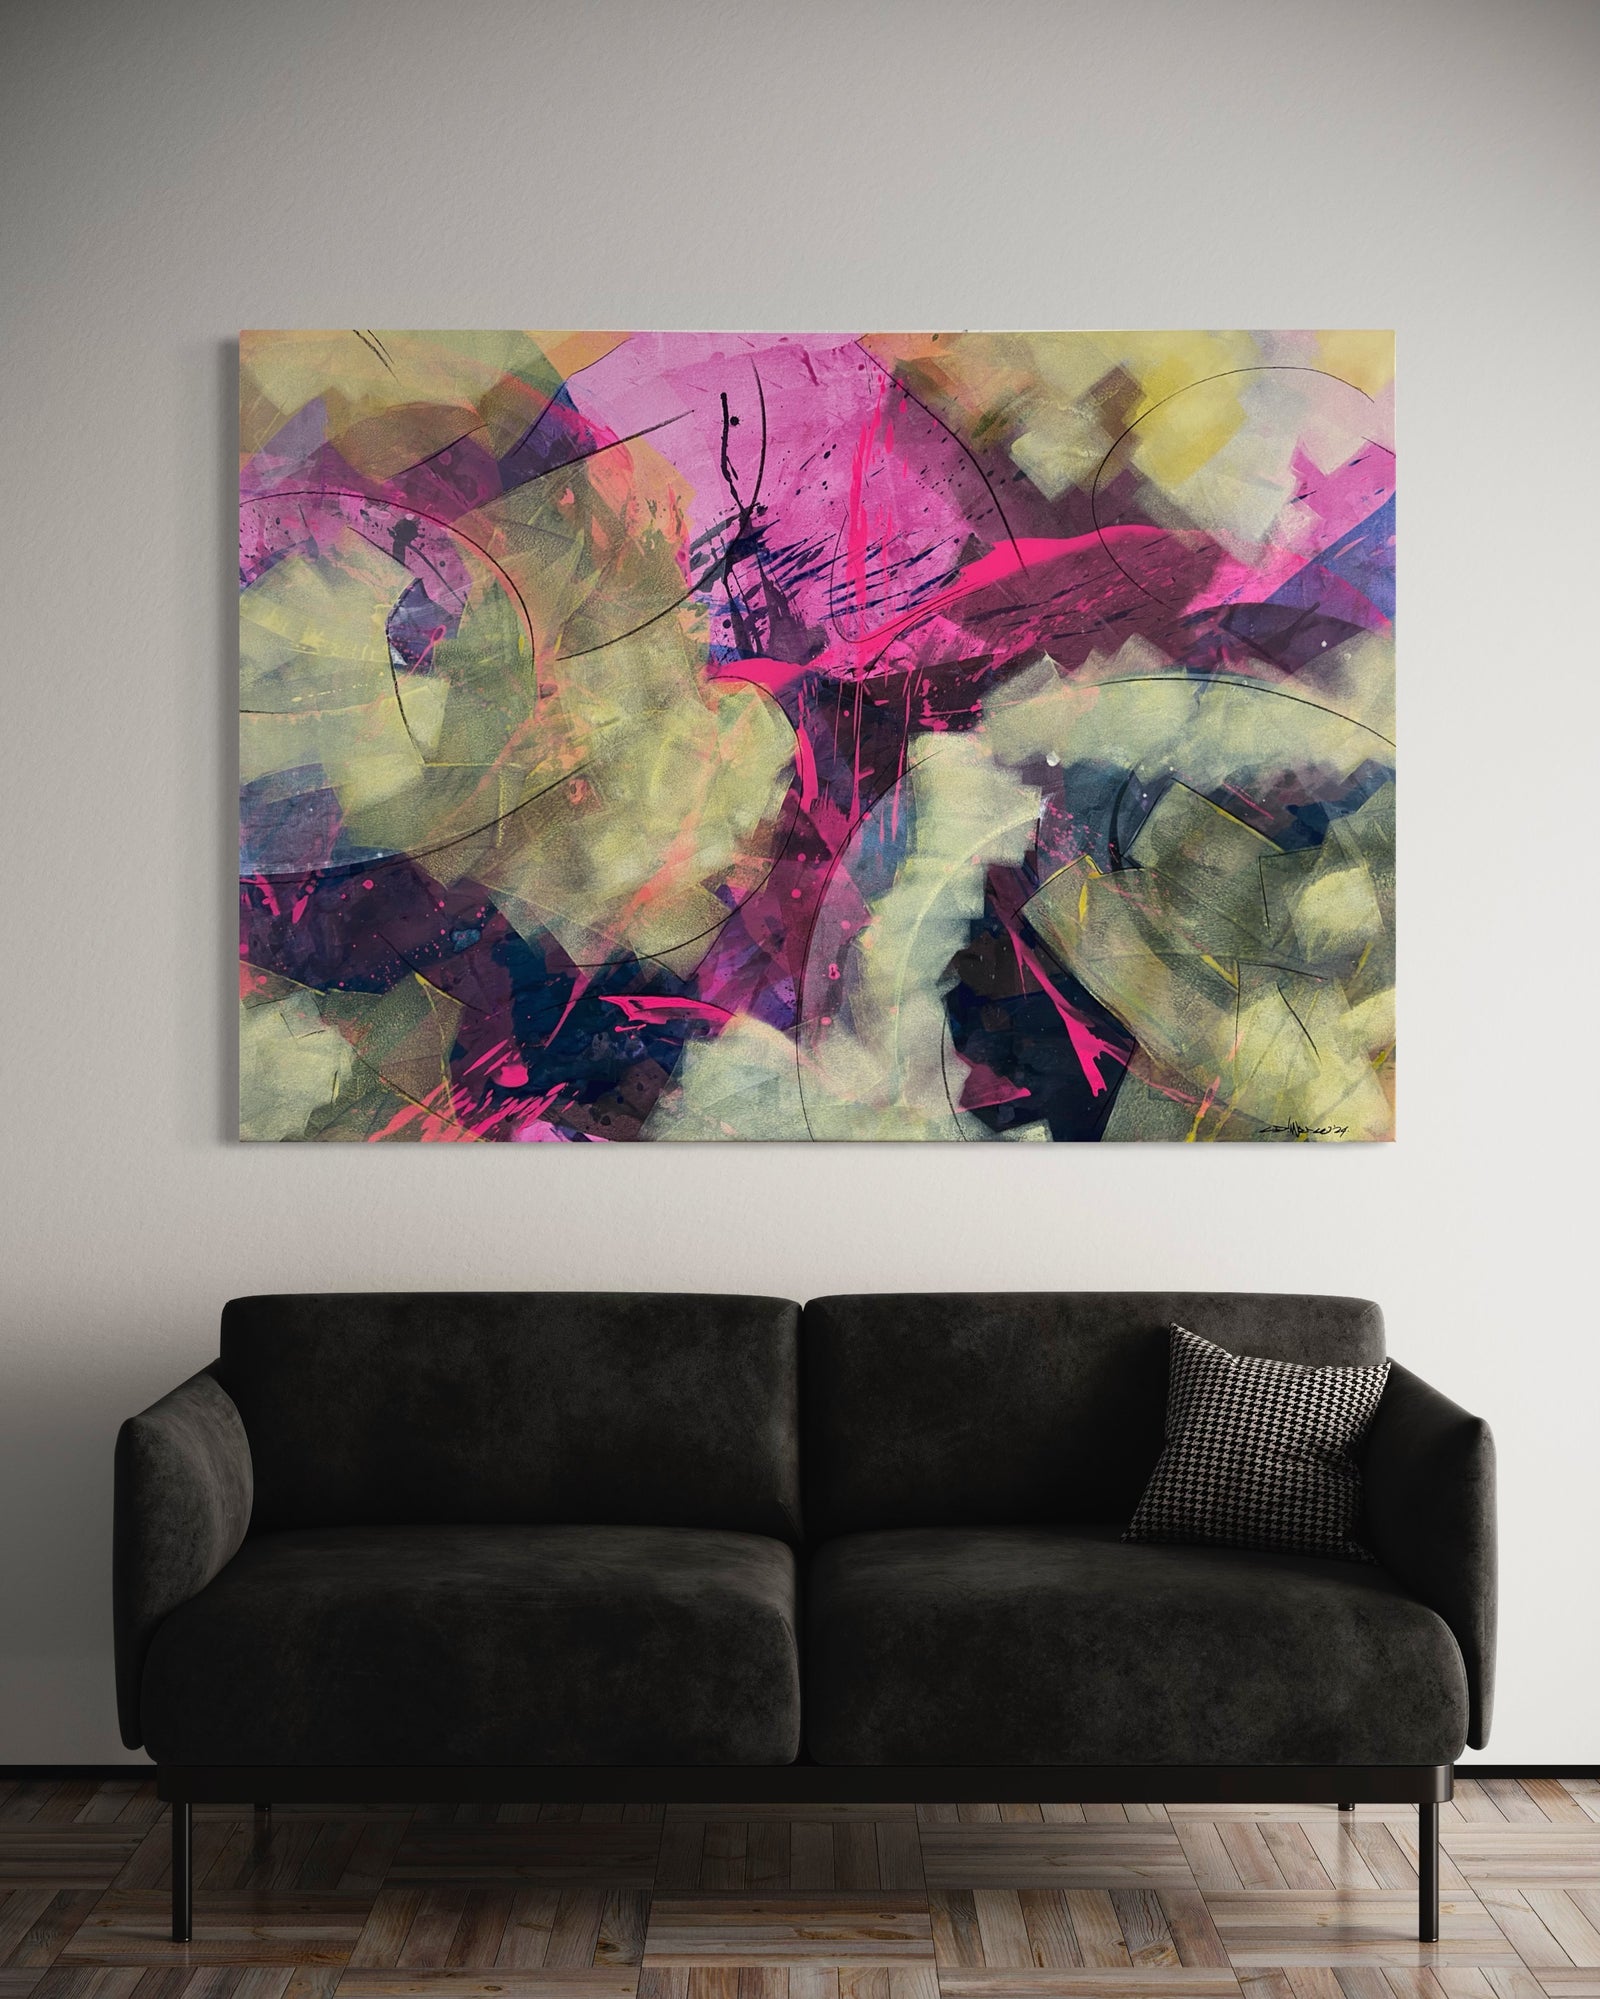 Kunstwerk von Claudio Di Marco mit dem Titel "abstrakt Nr. 17", 105cm hoch, 150cm breit und 2cm tief mit den Farben Pink und div. Gelbtöne